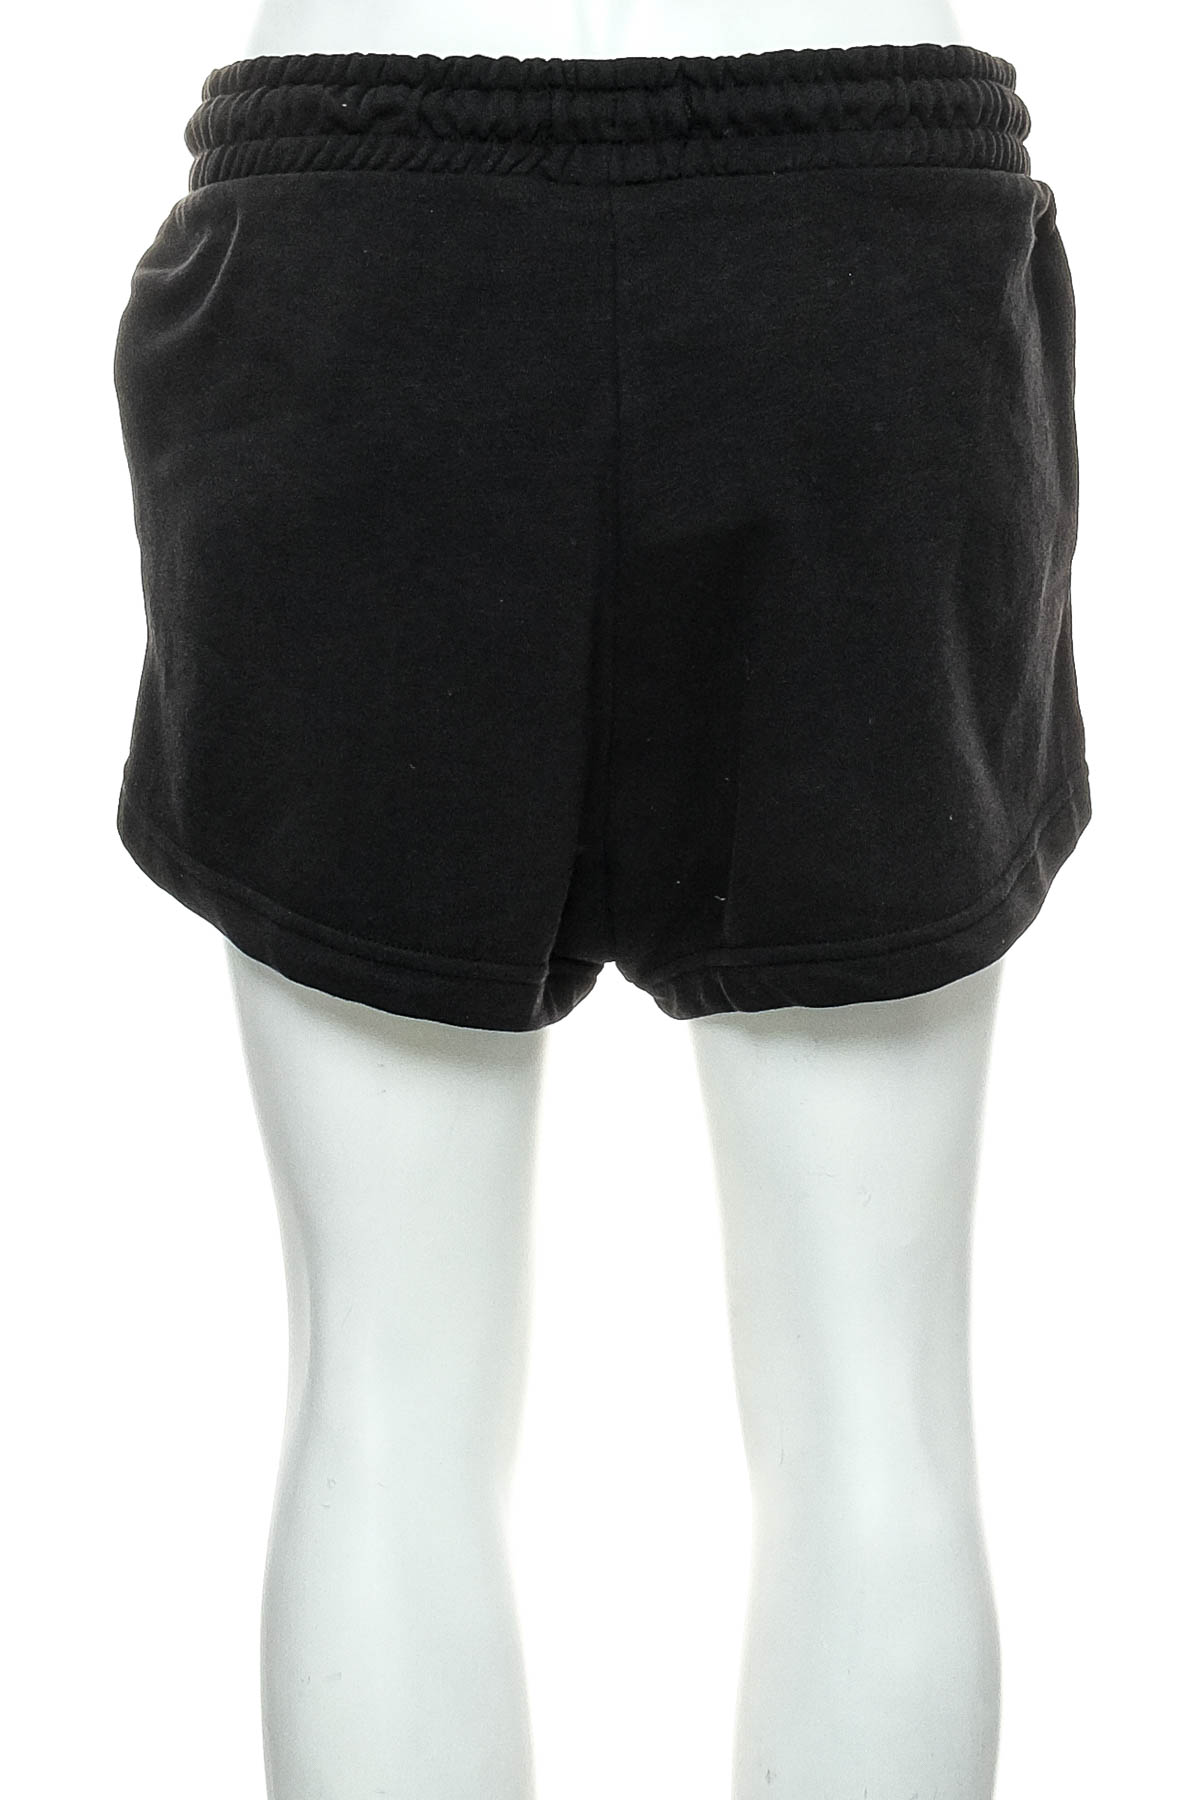 Female shorts - F&F - 1